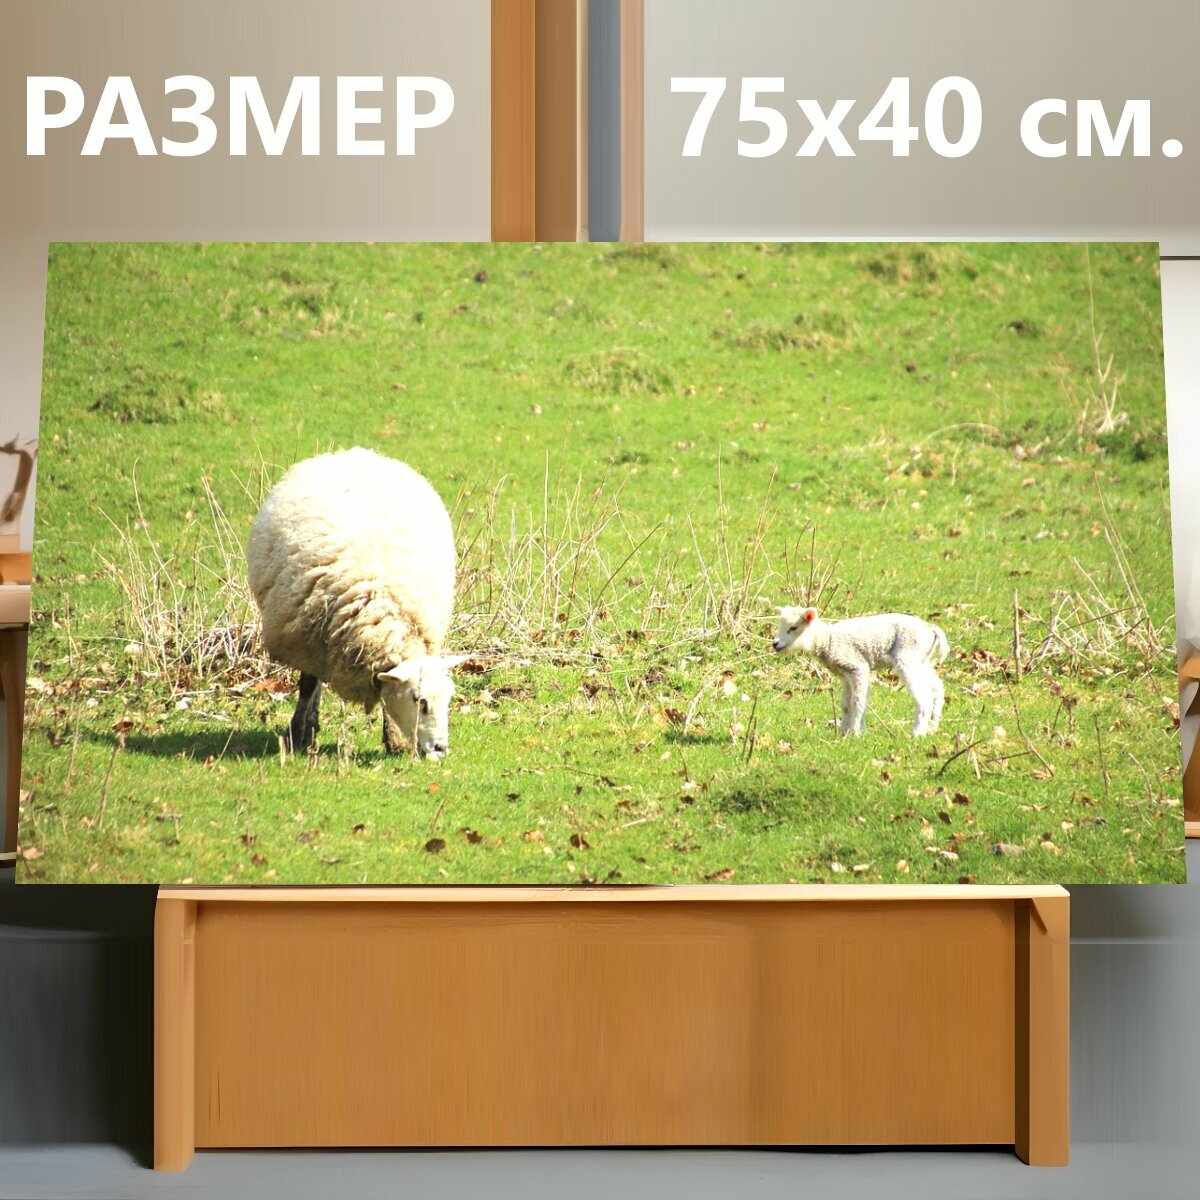 Картина на холсте "Овец, ягненок, баранина" на подрамнике 75х40 см. для интерьера